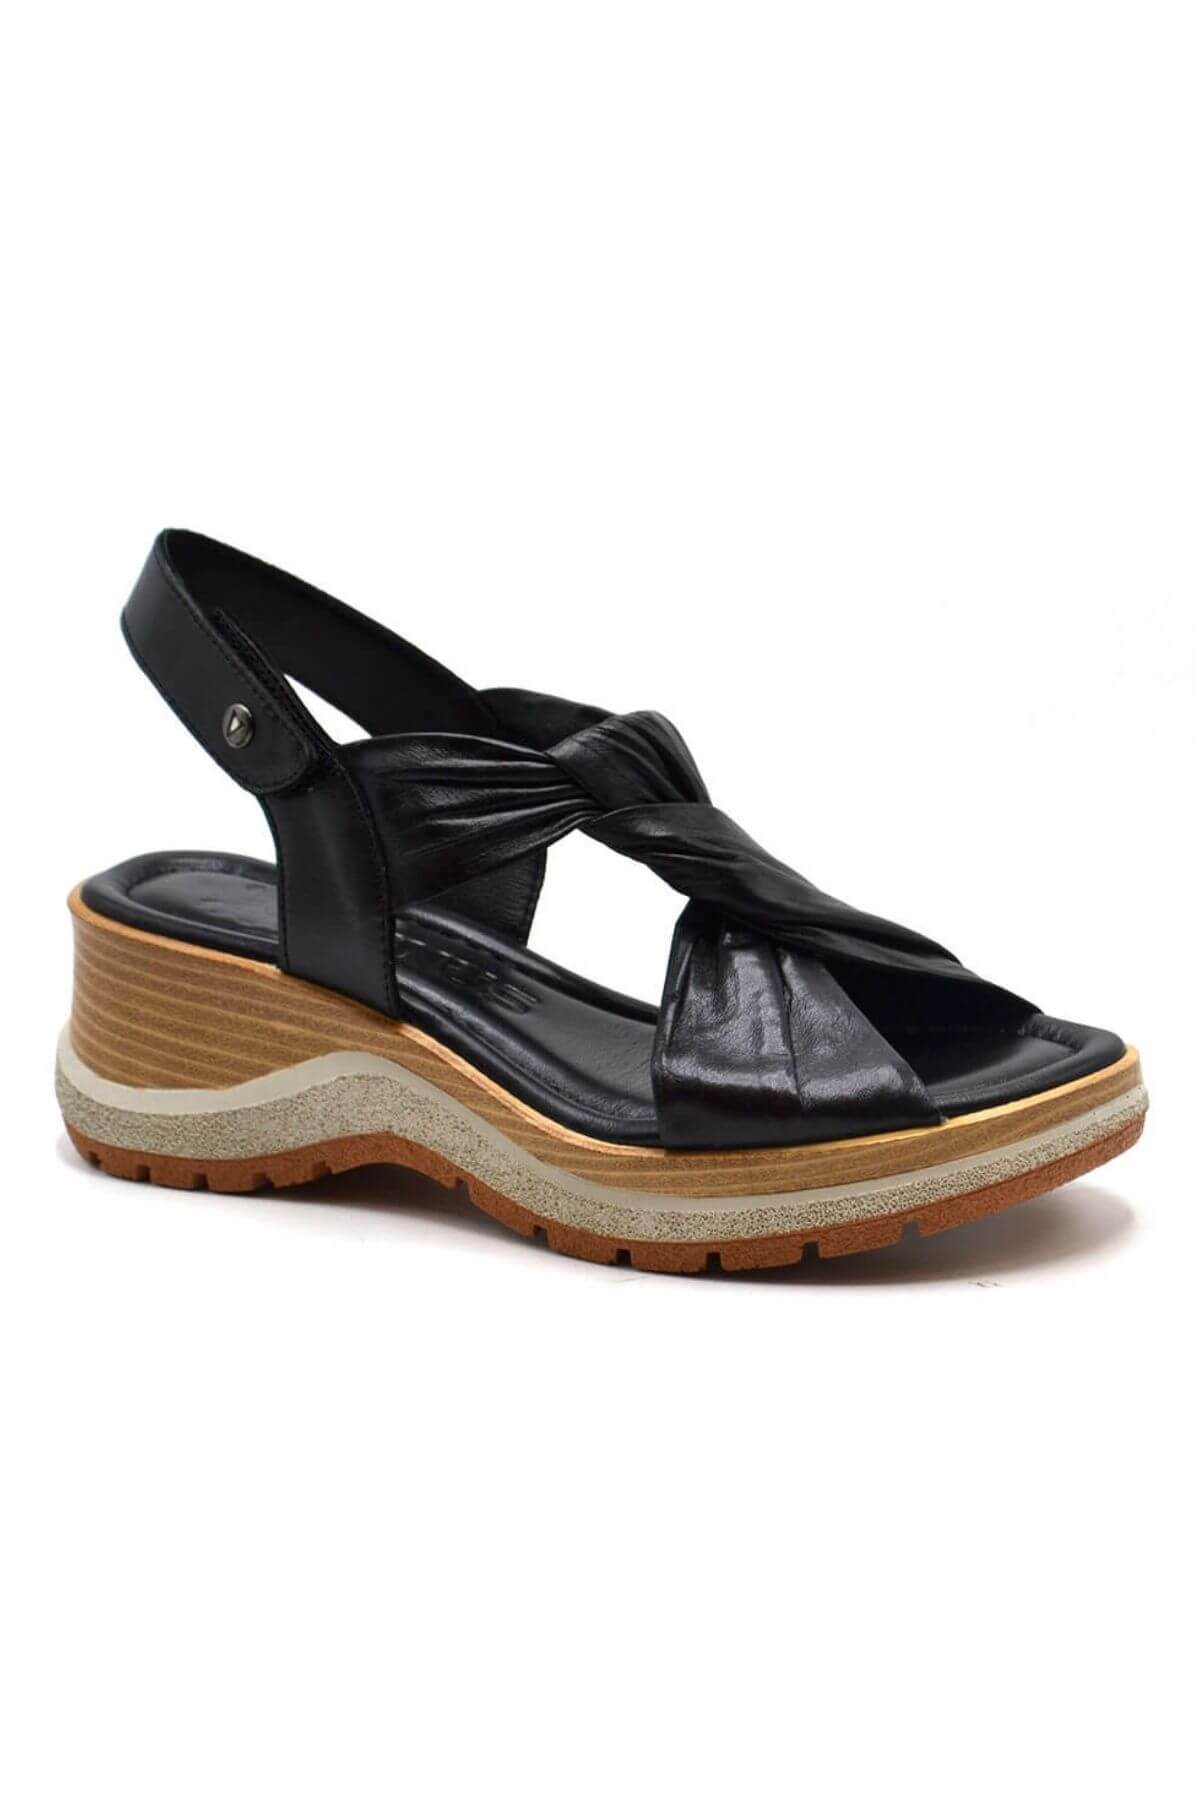 Kadın Comfort Deri Sandalet Siyah 2409901Y